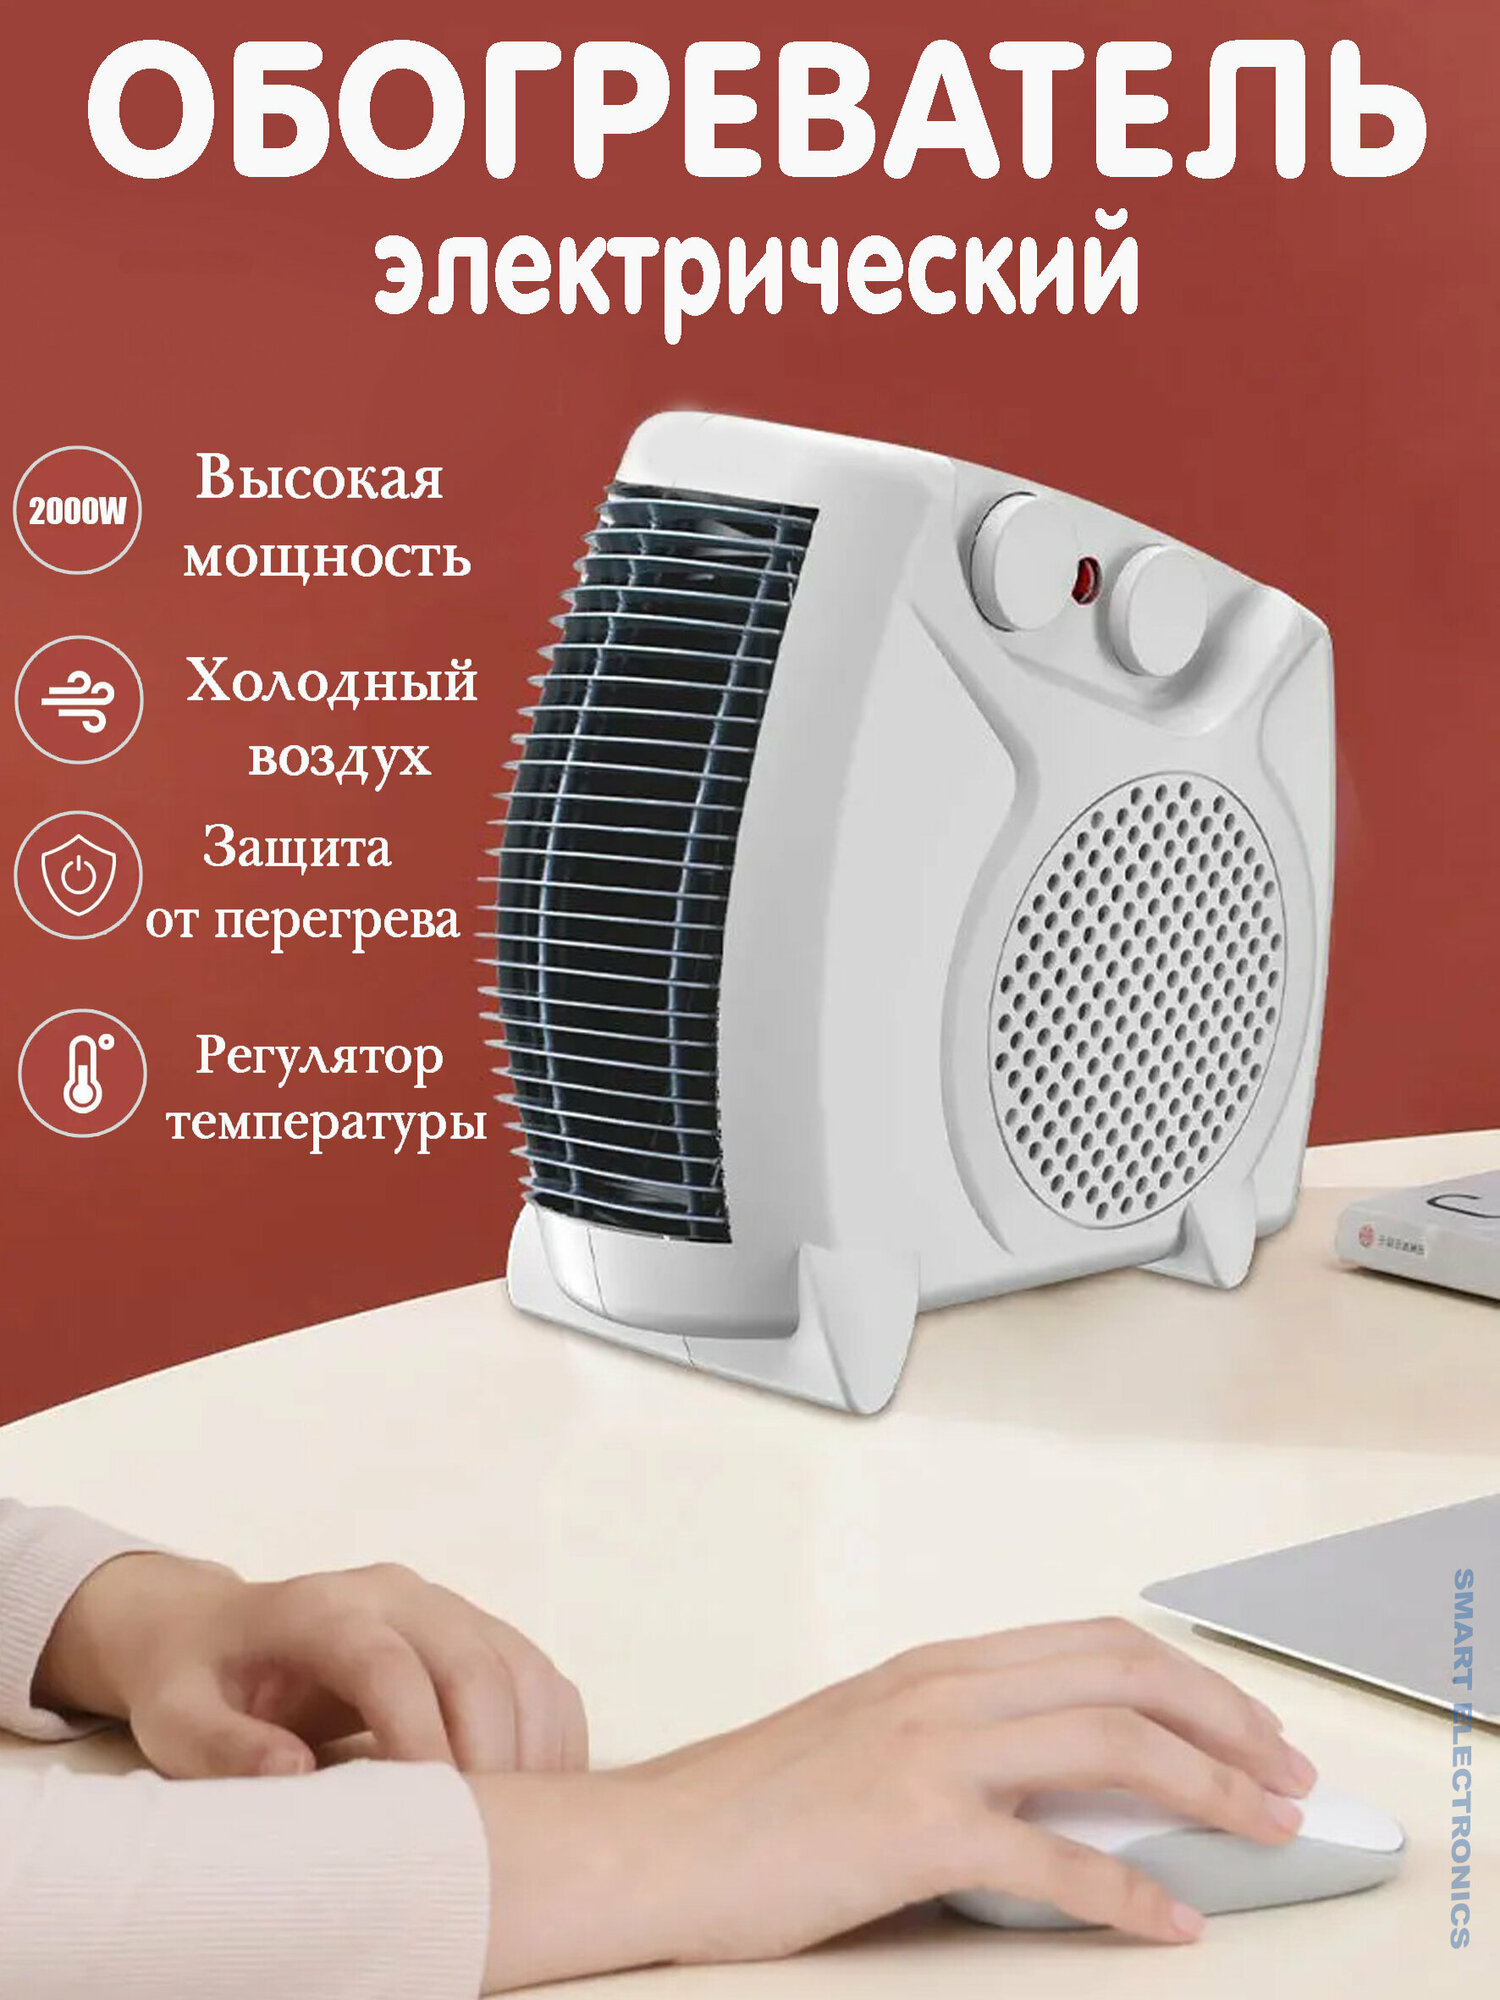 Функциональный обогреватель -ветродуйка/тепловентилятор/высокая мощность/без шума/регулятор температуры/белый